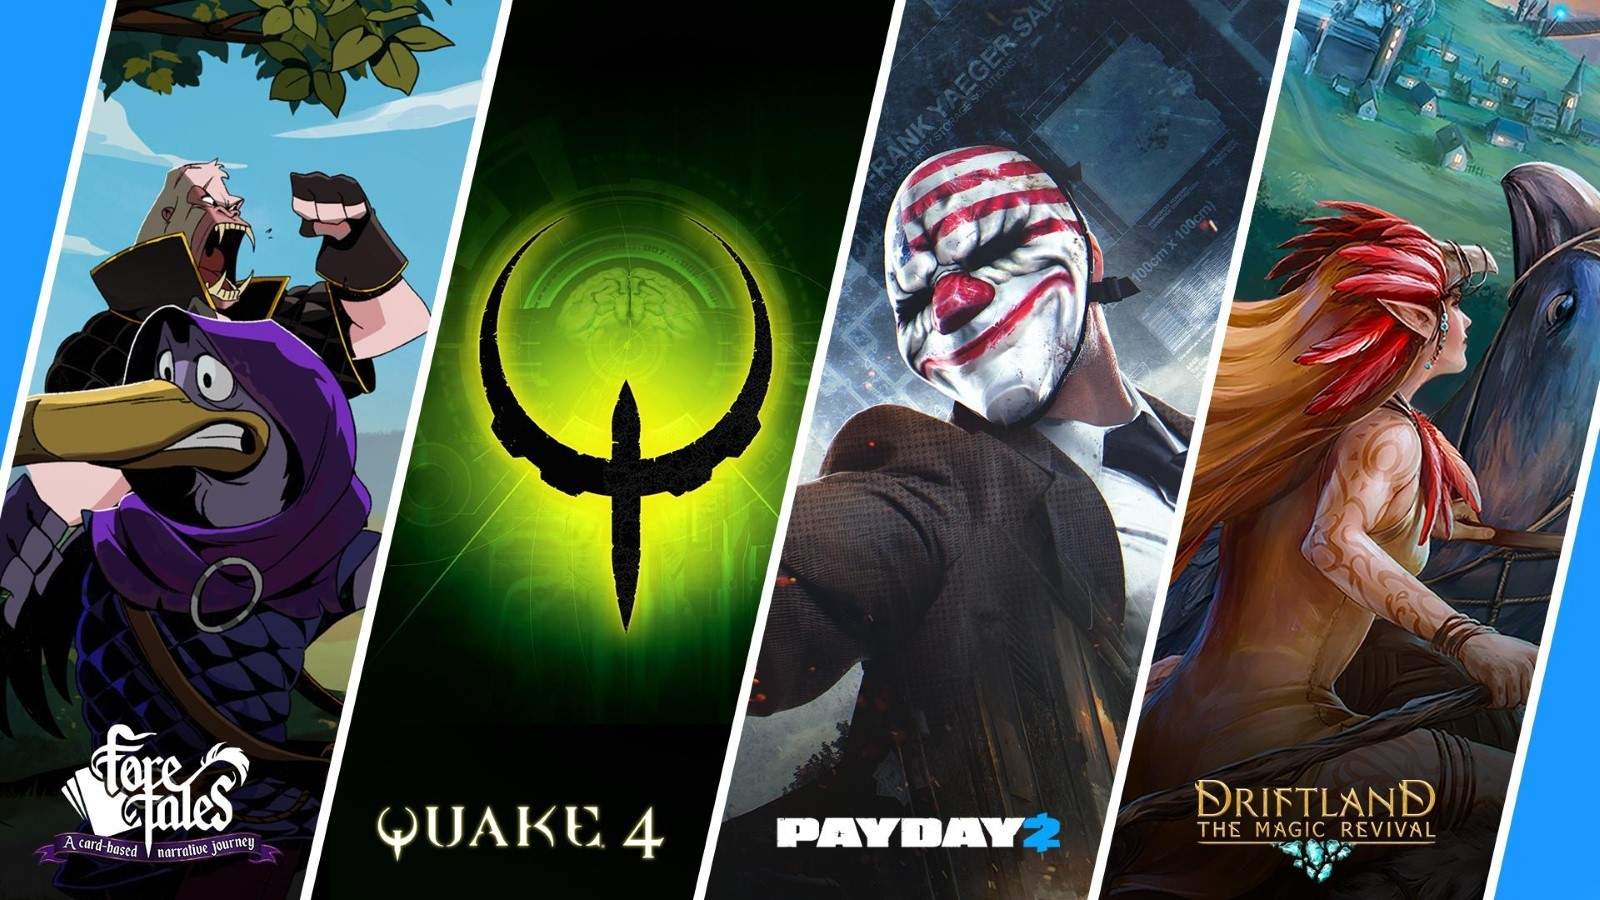 Prime Gaming terá pacotes de FIFA 23 e o jogo Quake grátis em dezembro